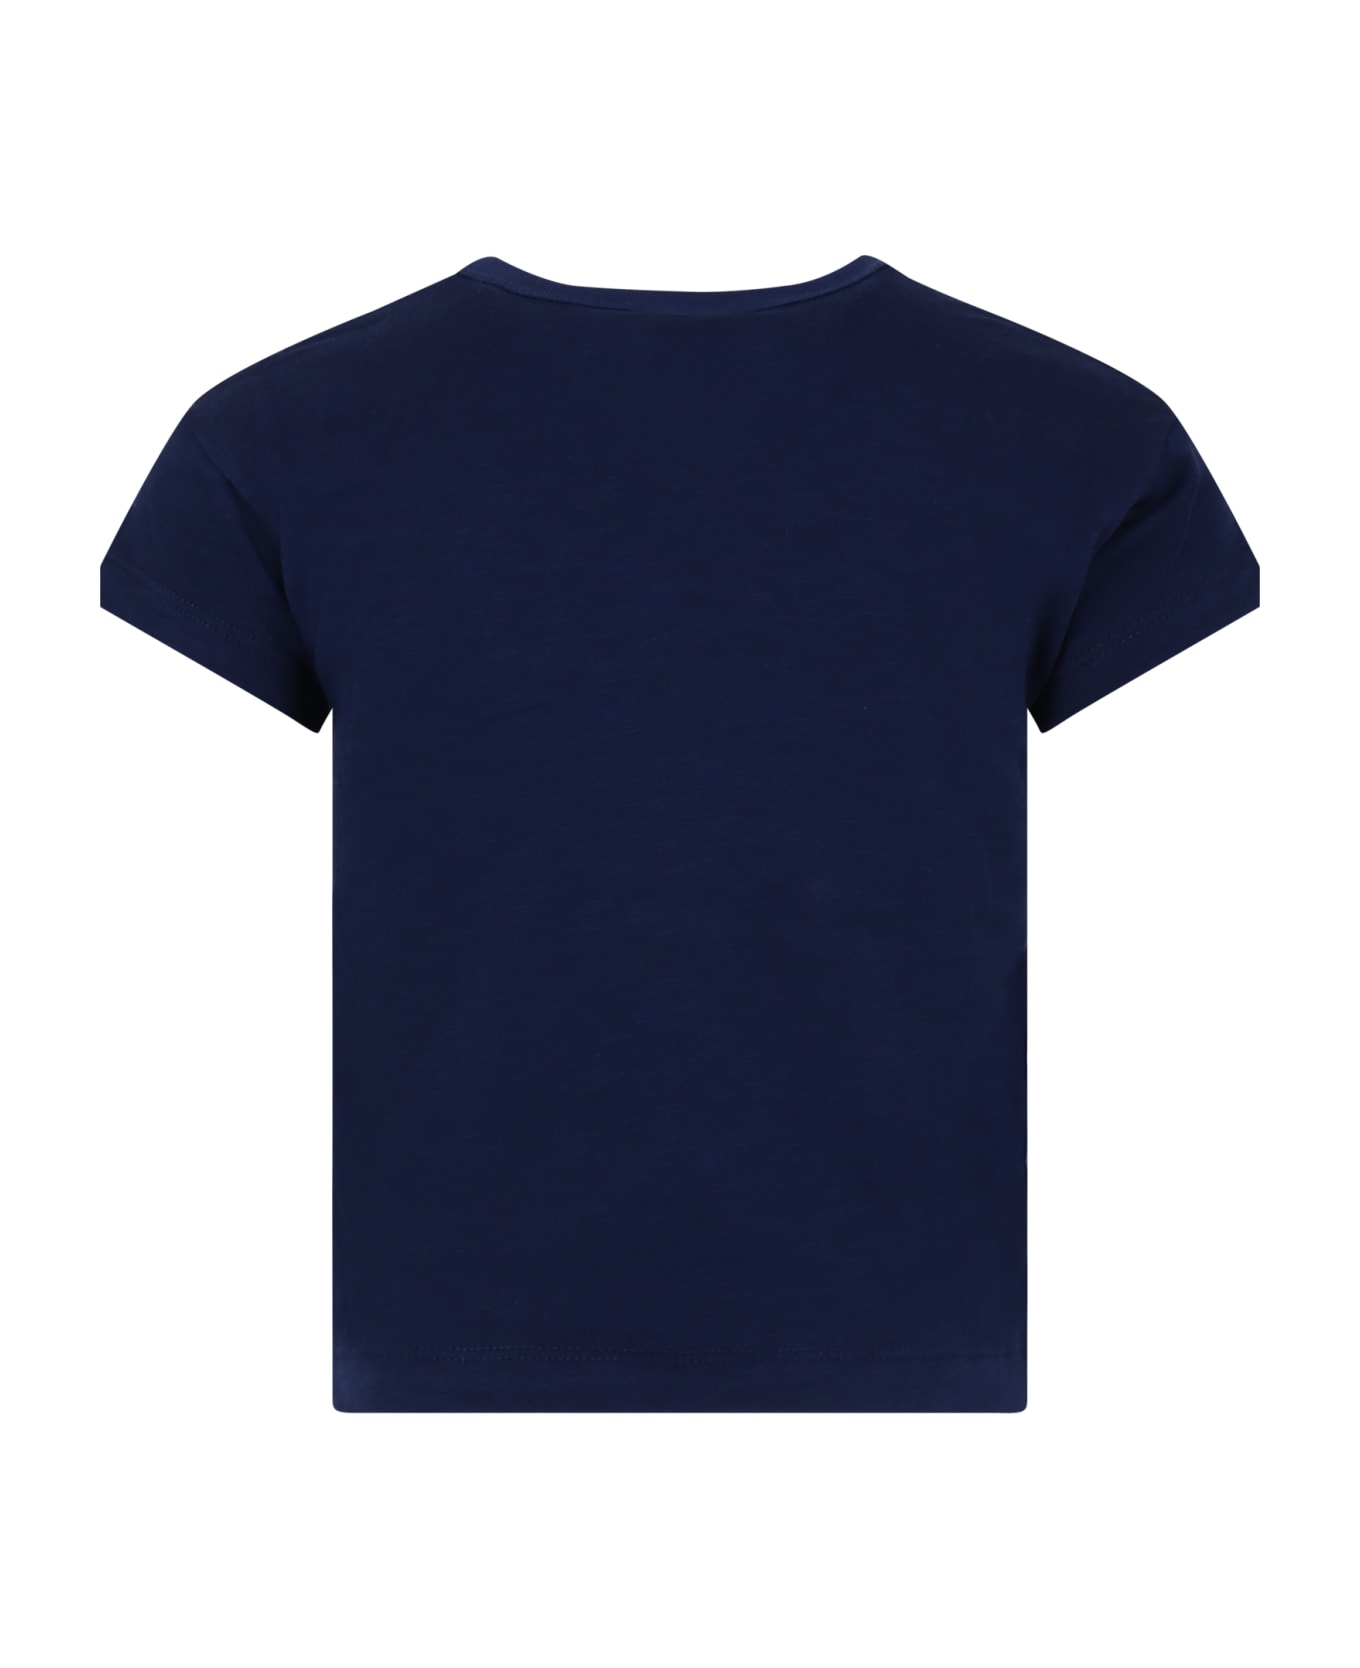 Petit Bateau Blue T-shirt For Kids - Blue